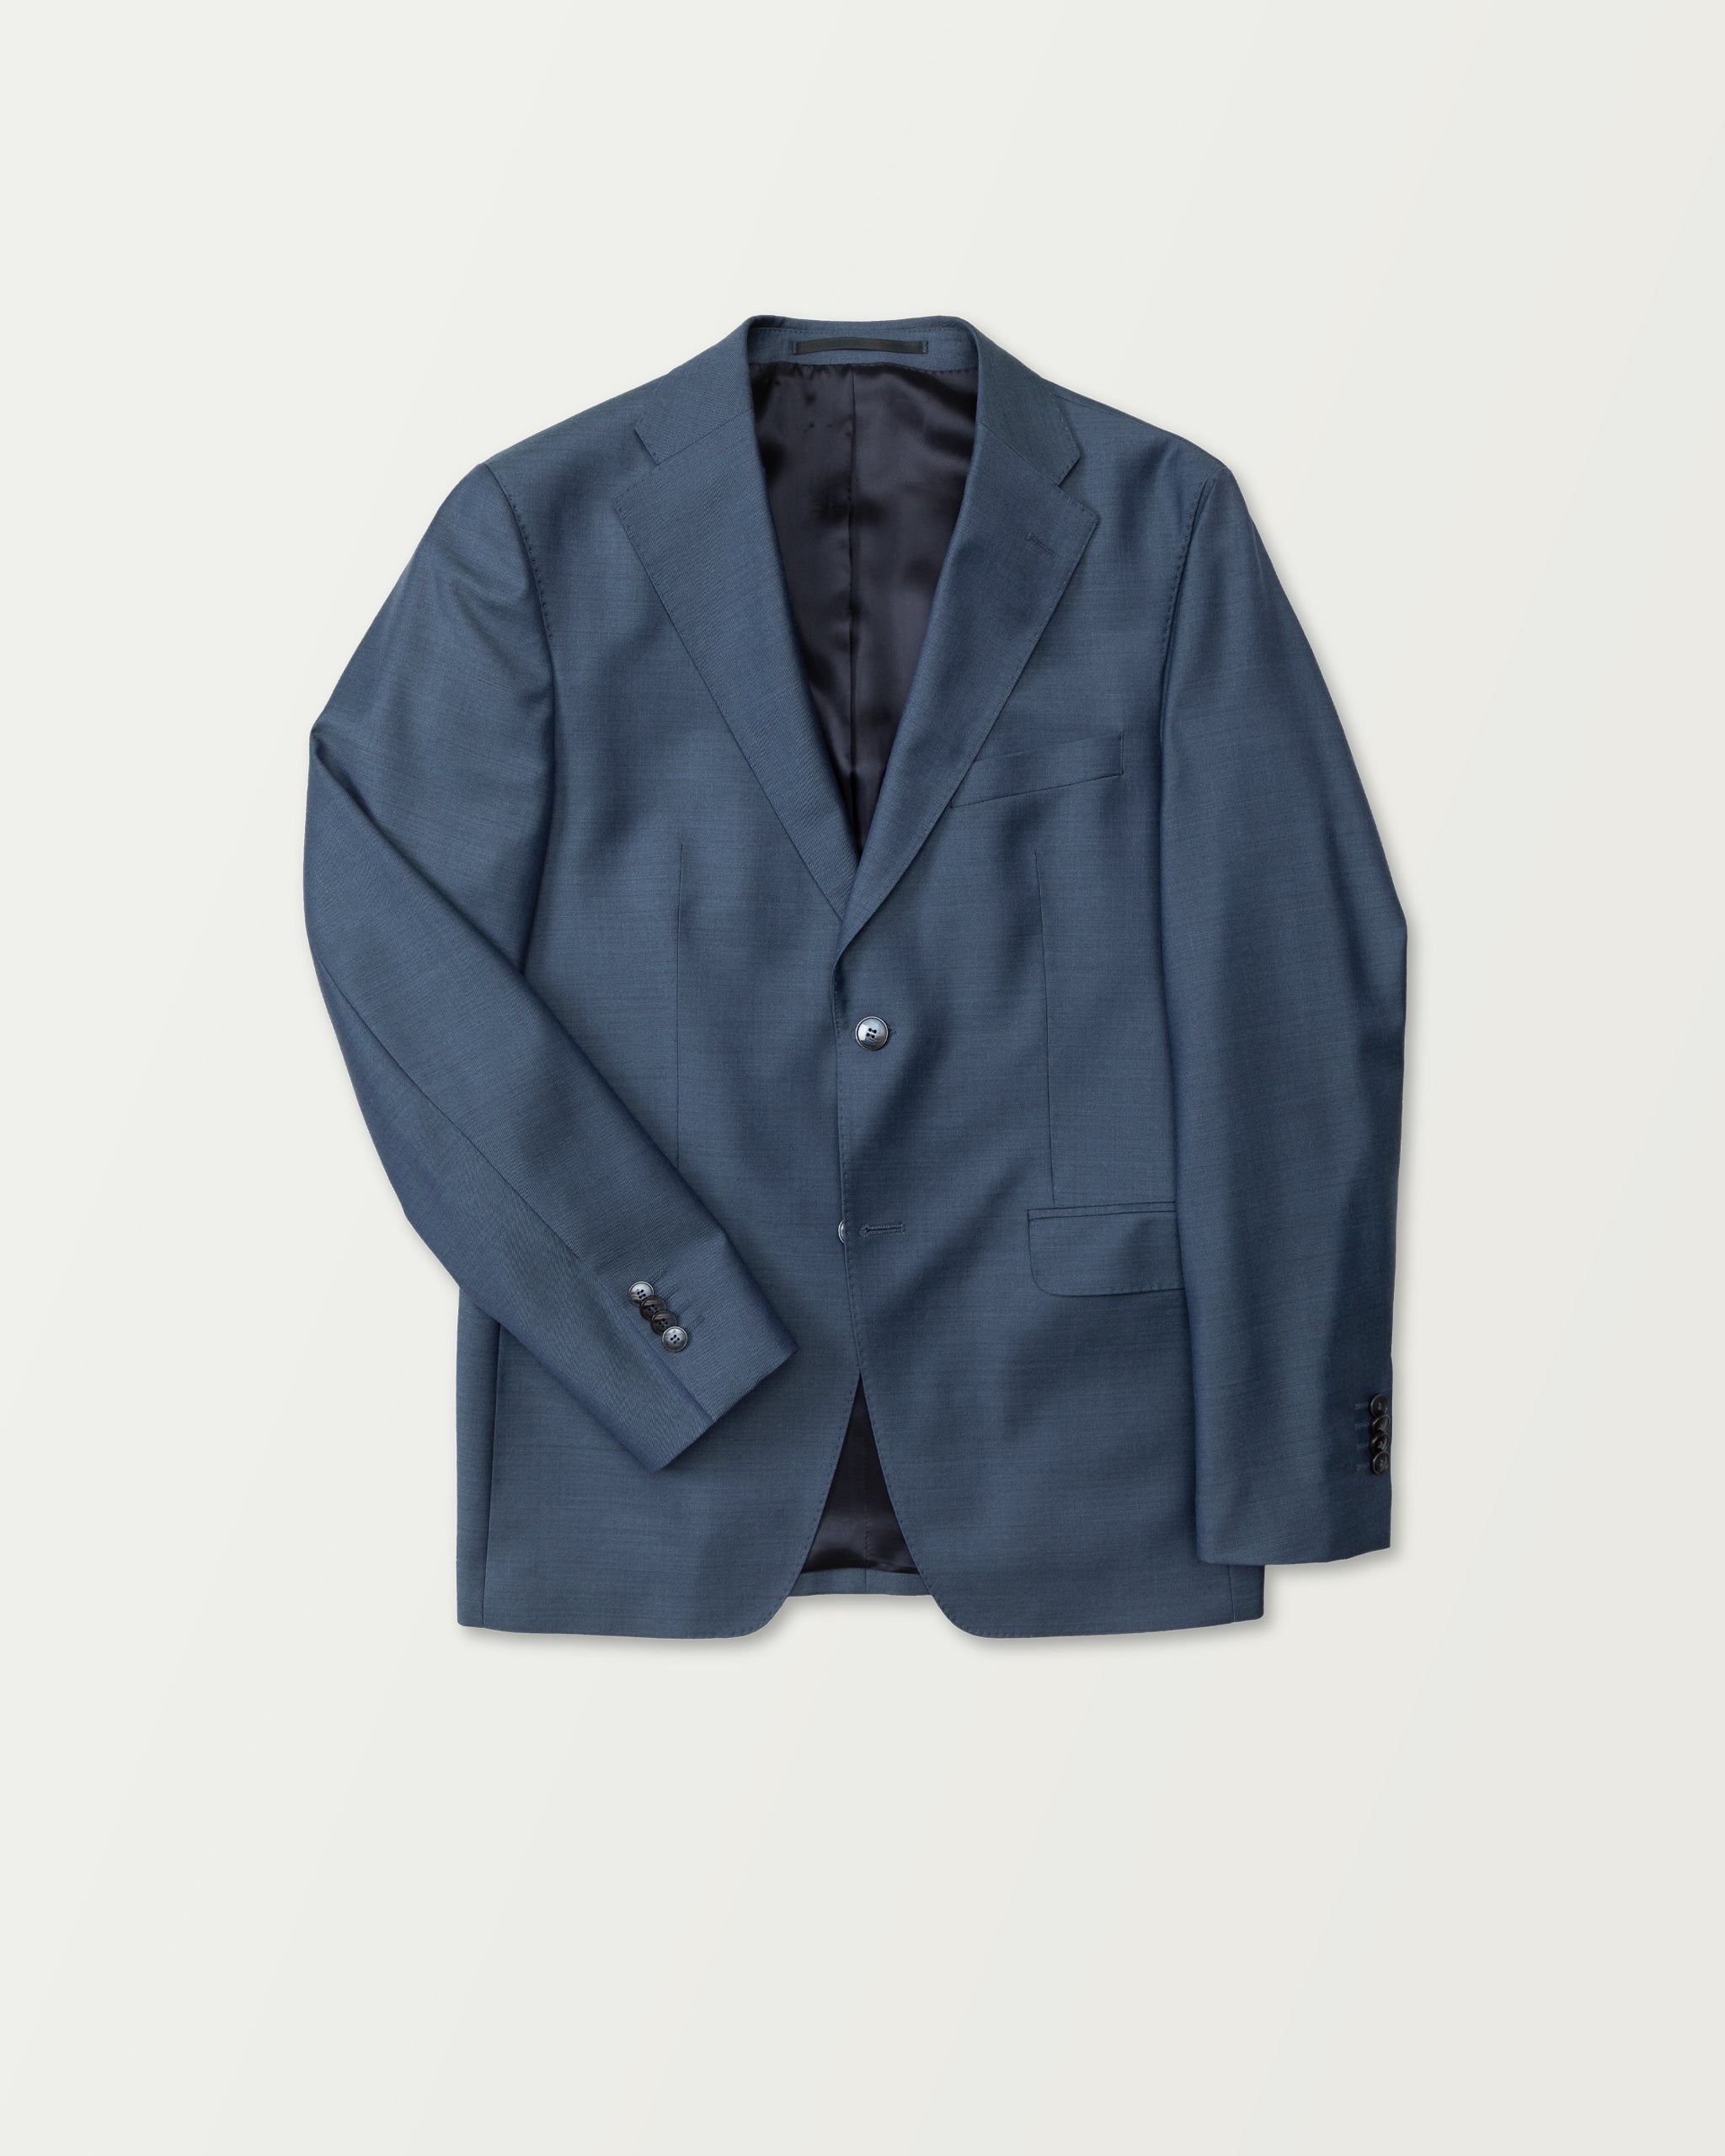 Turo - Blue Premium Wool Suit in Modern Fit Jacket